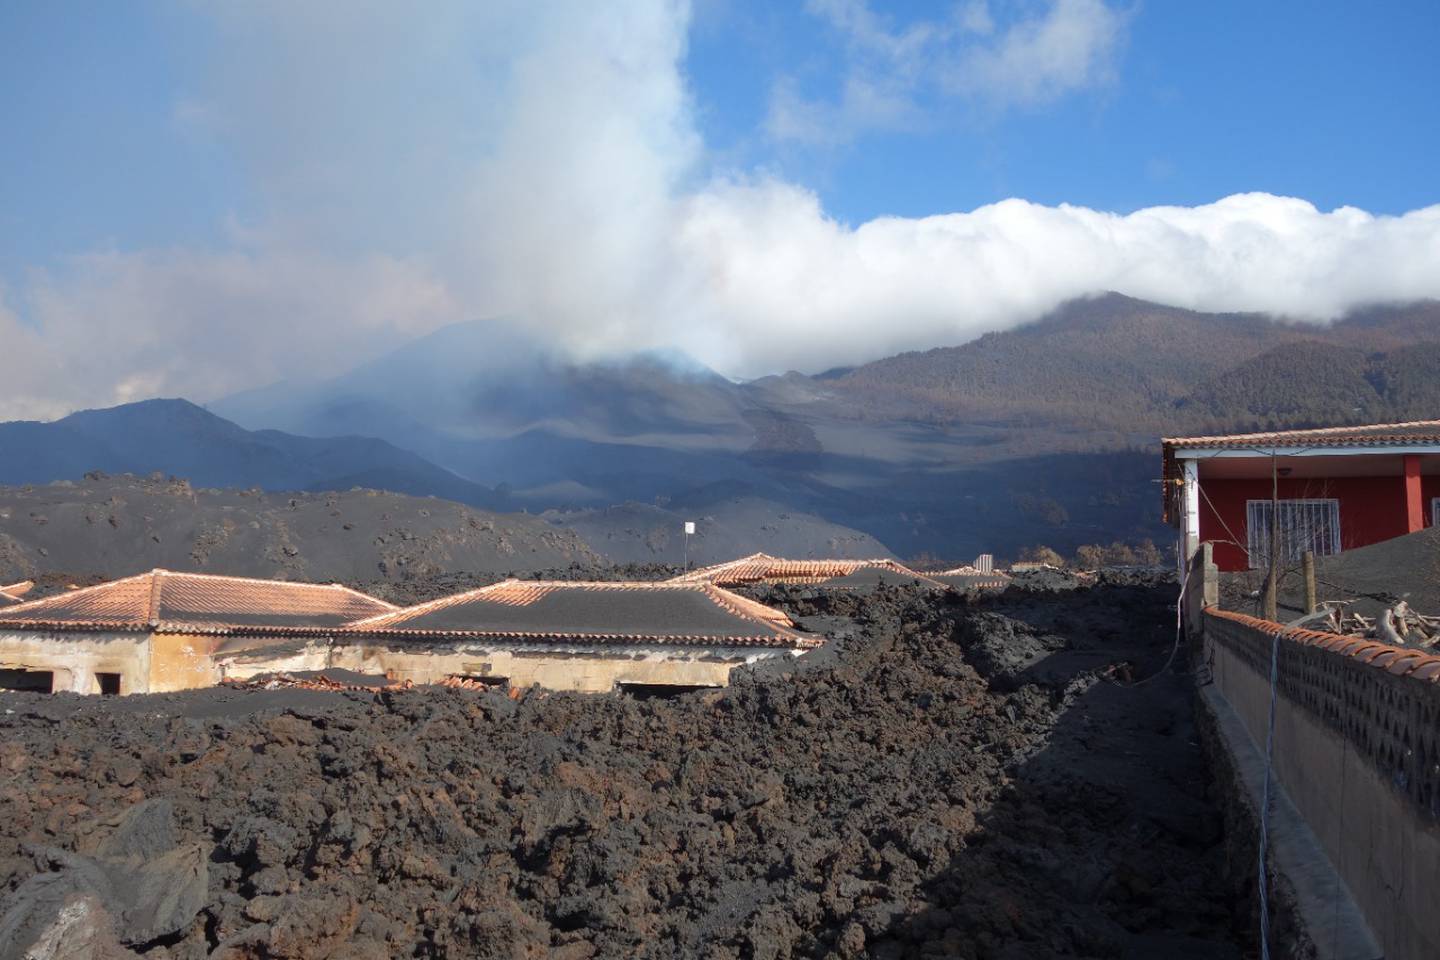 El vulcanólogo Gino González Ilama, estuvo en la isla de Canarias, La Palma, en España, entre noviembre y diciembre del 2021, tras la erupción de un volcán de la zona que provocó el nacimiento de otro volcán.